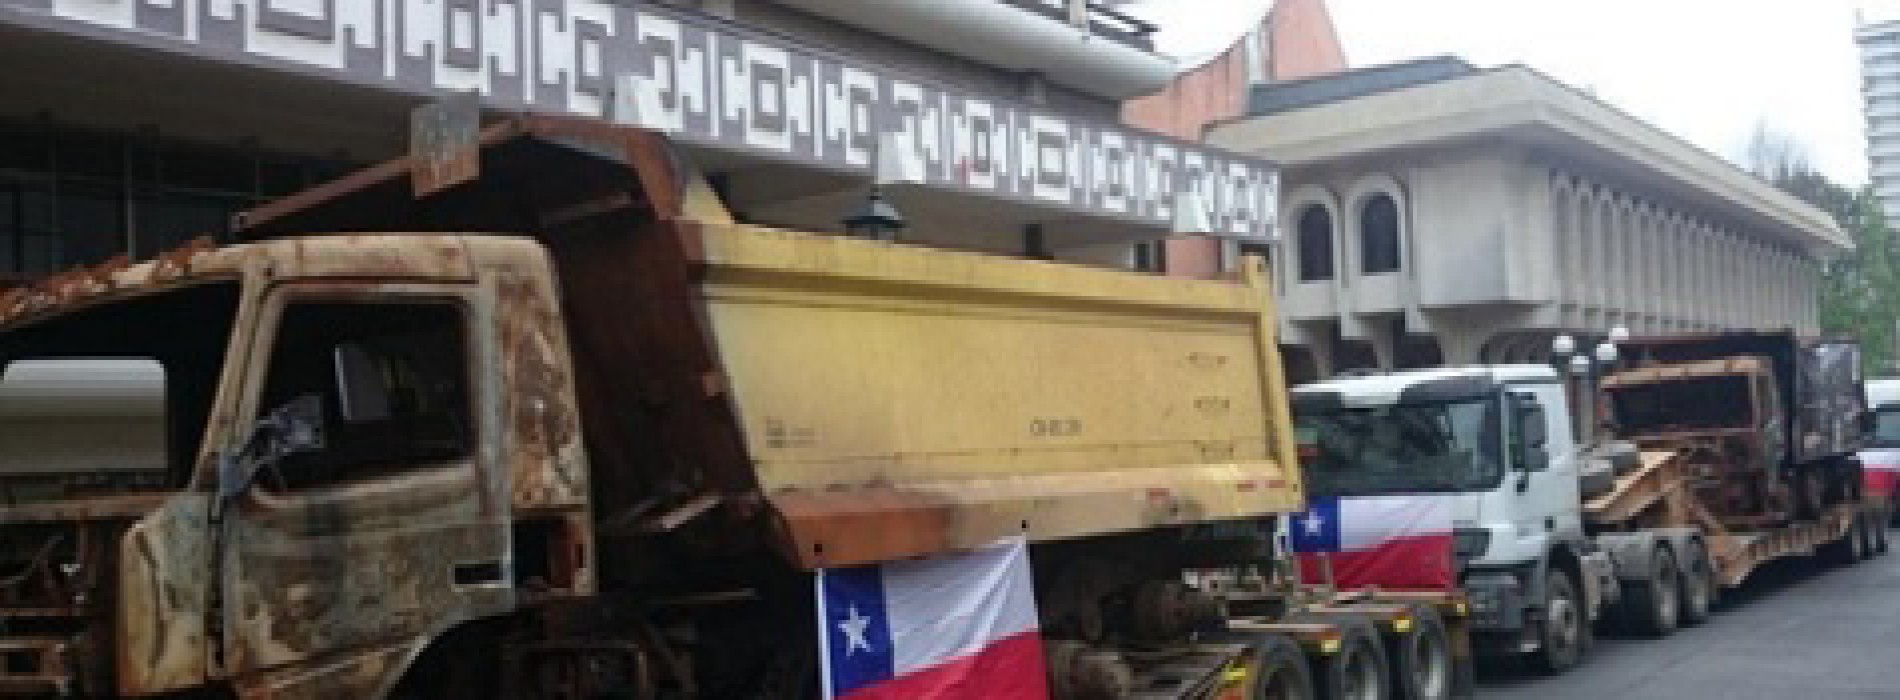 Intendencia autoriza con condiciones “marcha de camiones” y ellos rechazan propuesta